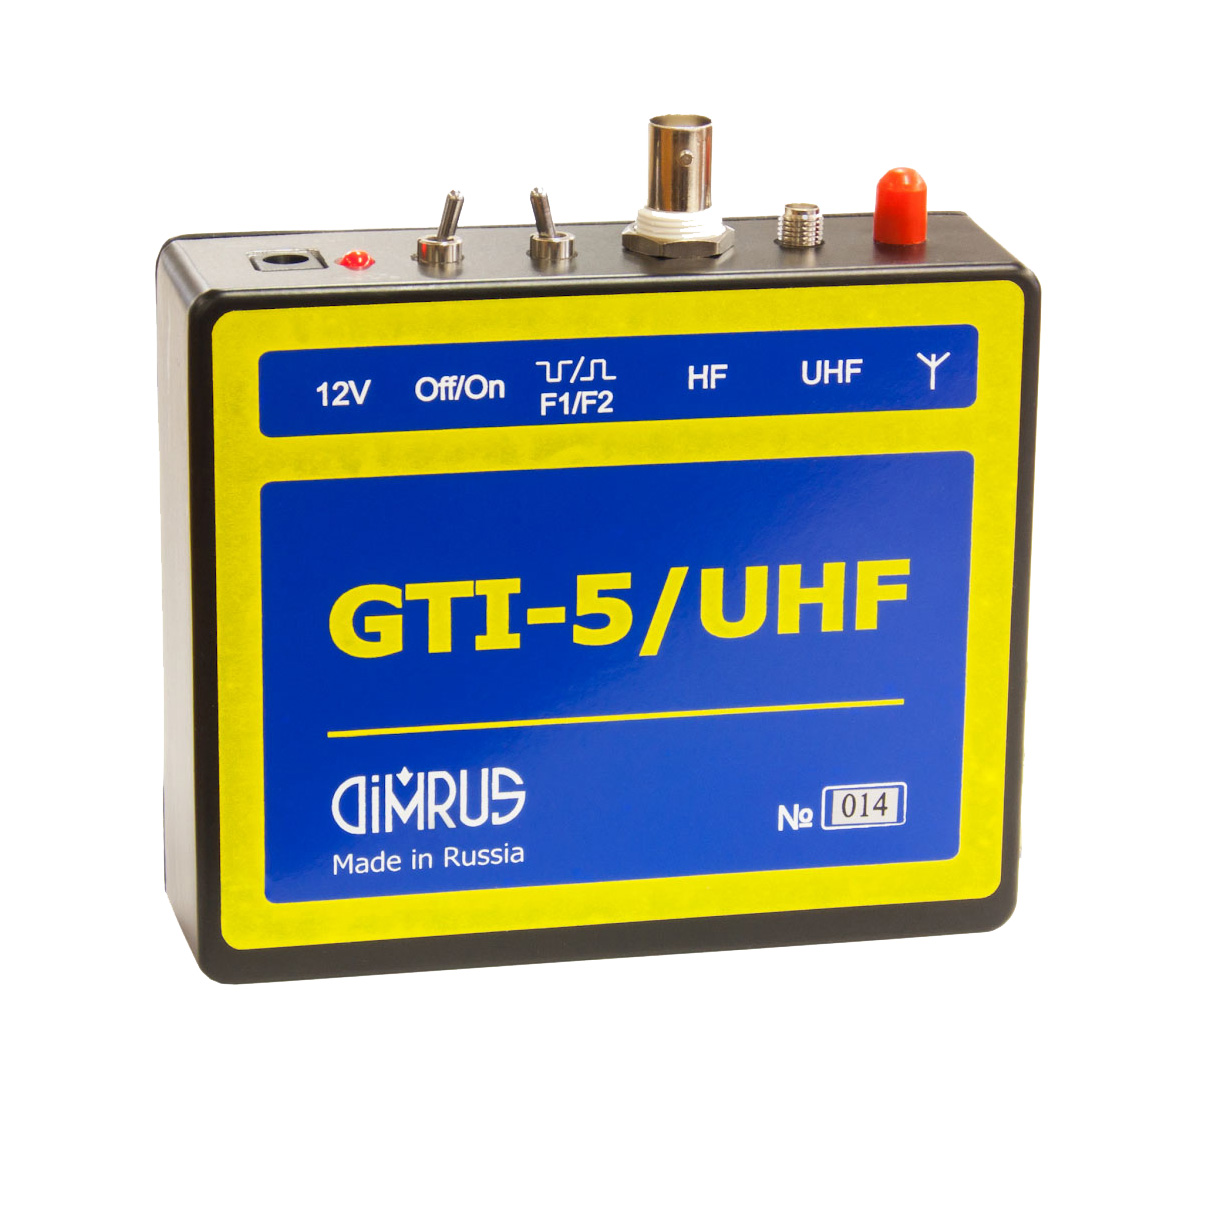 GTI-5/UNF — генератор тестовых импульсов